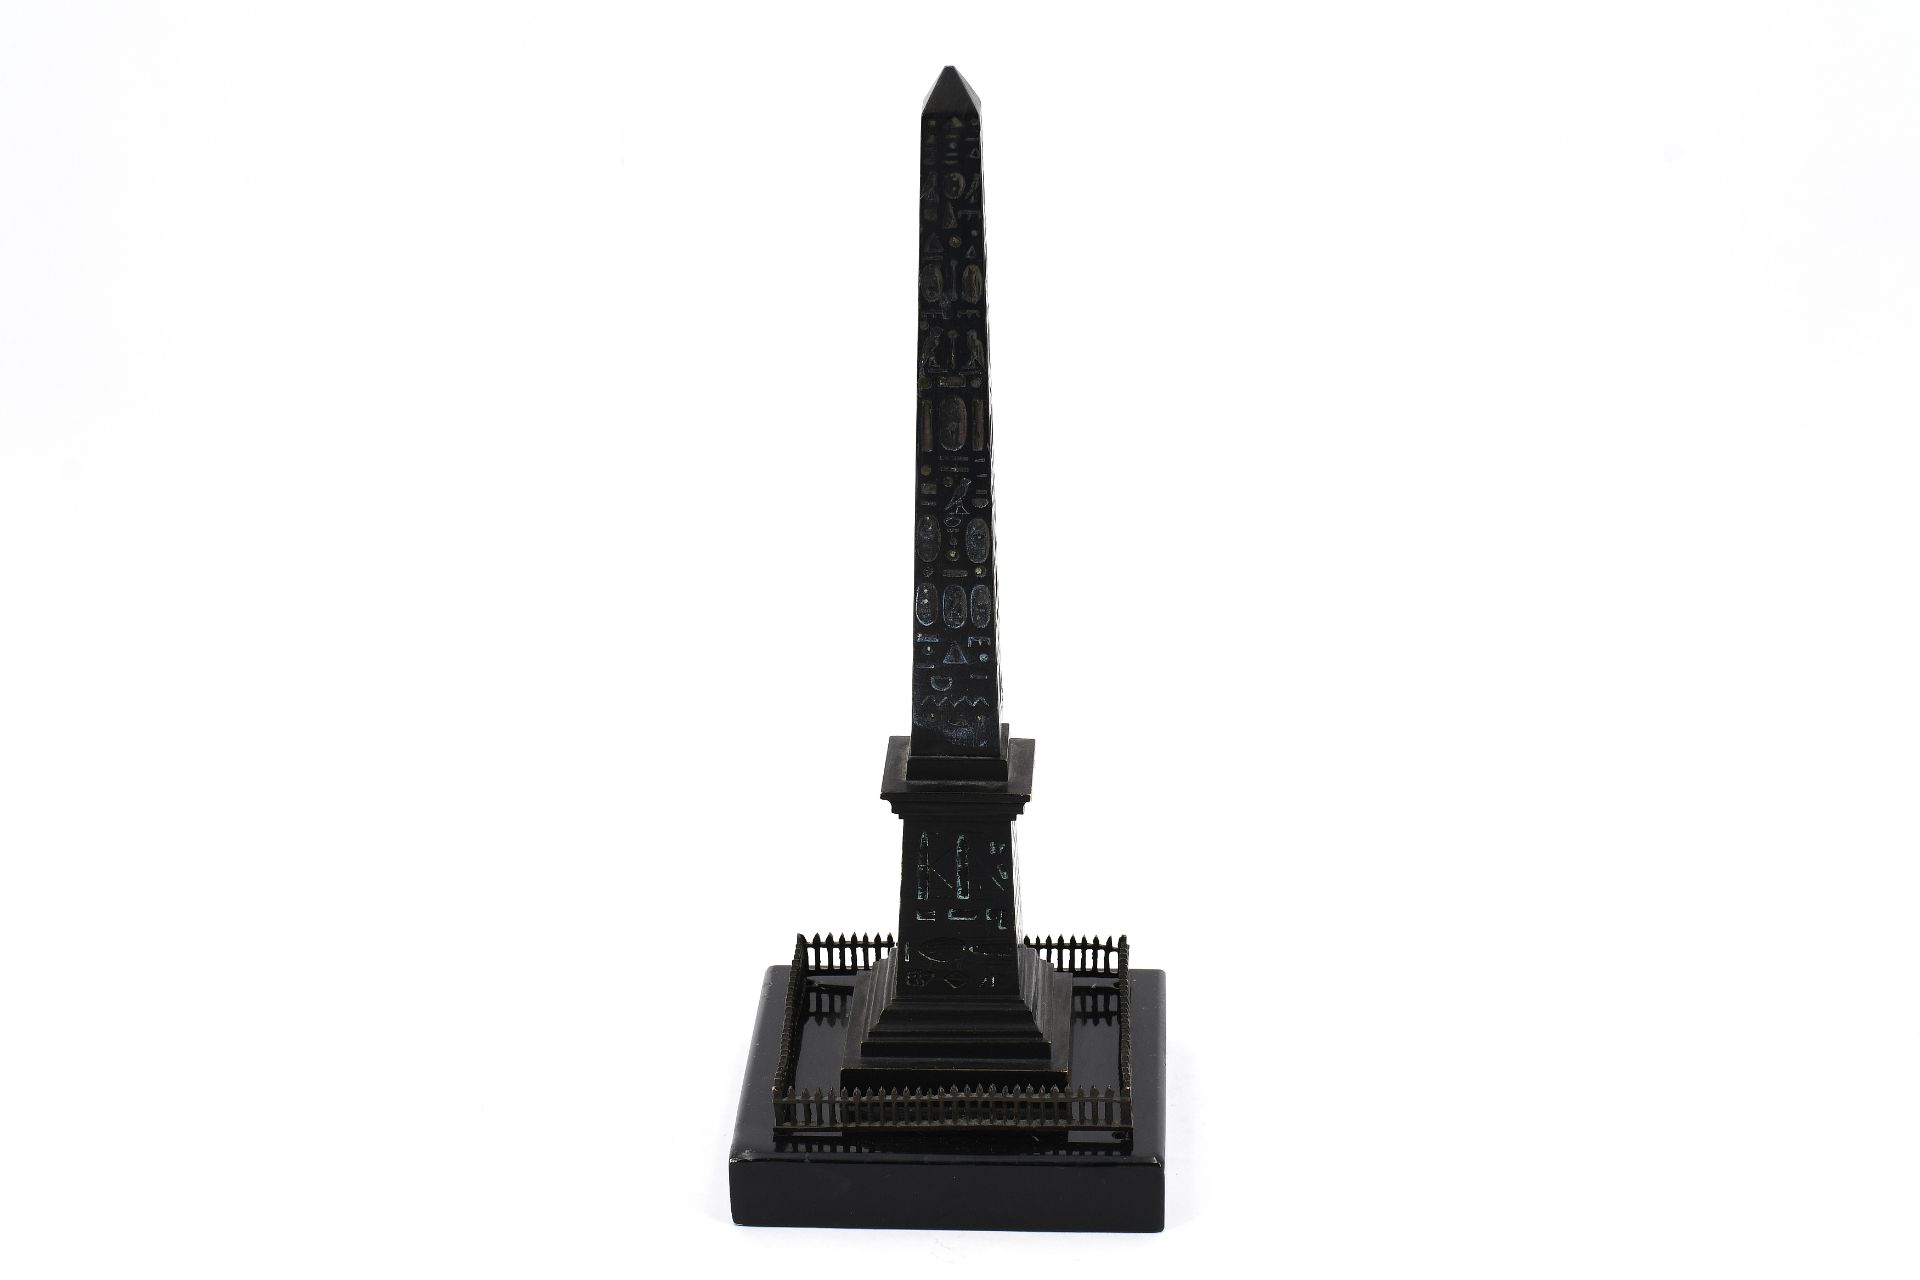 Kleiner Luxor Obelisk des Place de la Concorde in Paris - Image 6 of 6